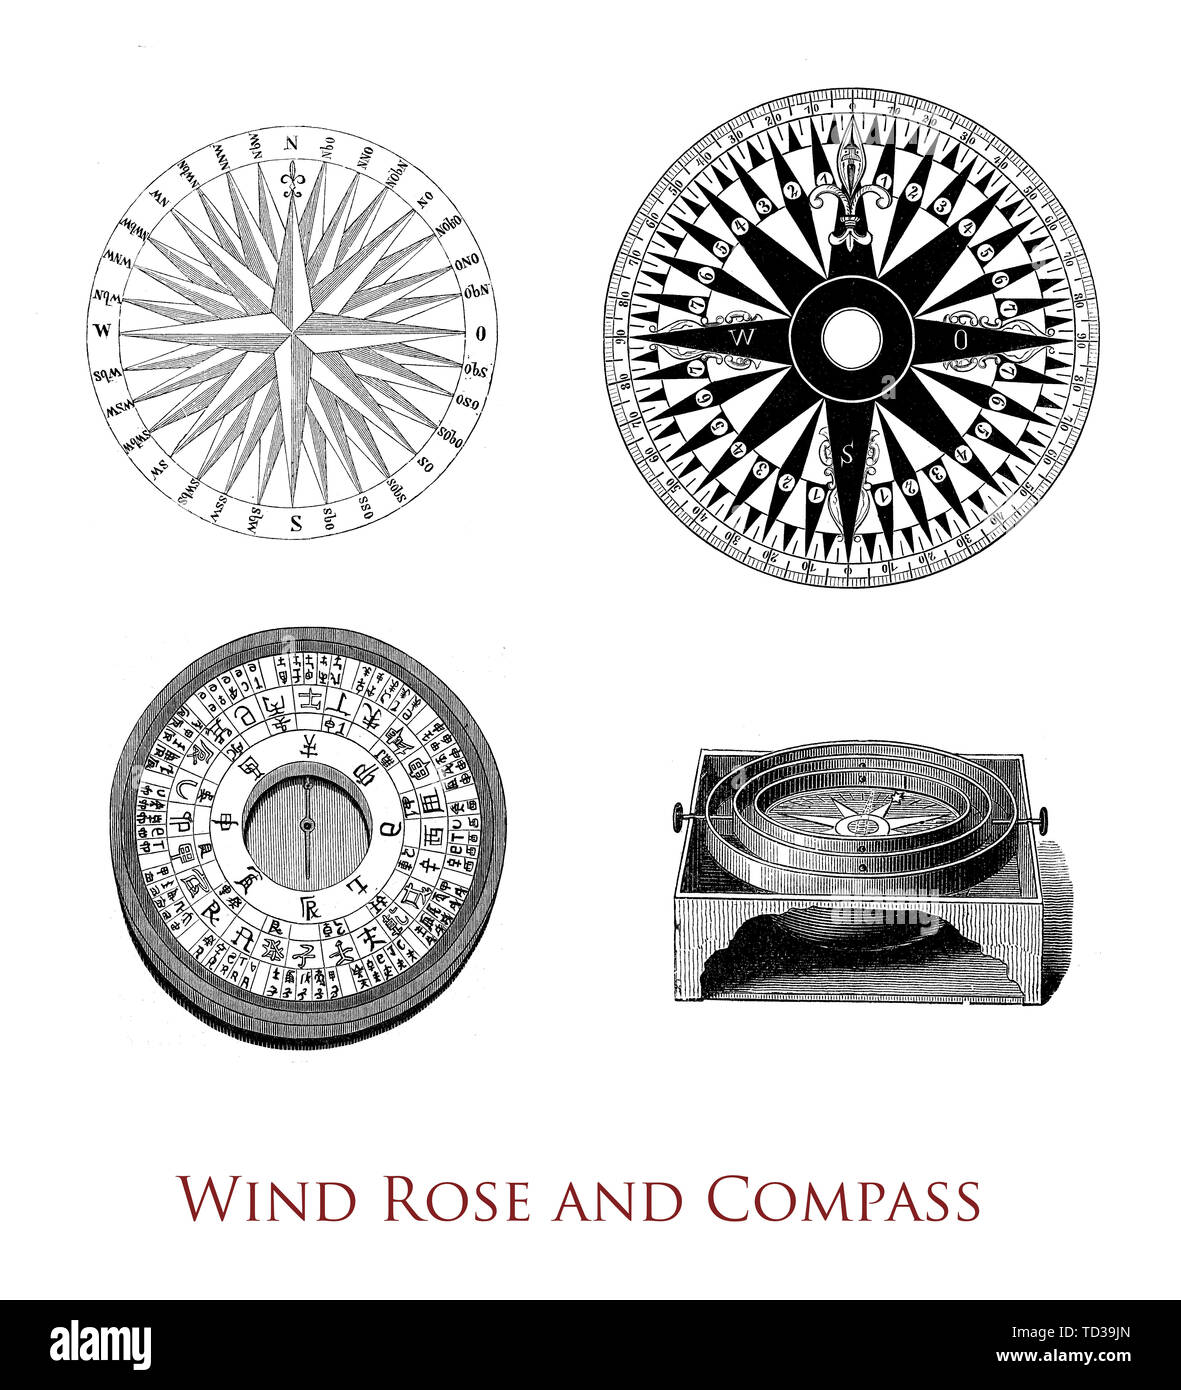 Strumenti di navigazione: rosa dei venti, cinese e bussola rosa dei venti.  La rosa dei venti è utilizzato dai meteorologi per determinare come la  velocità e la direzione del vento sono distribuiti